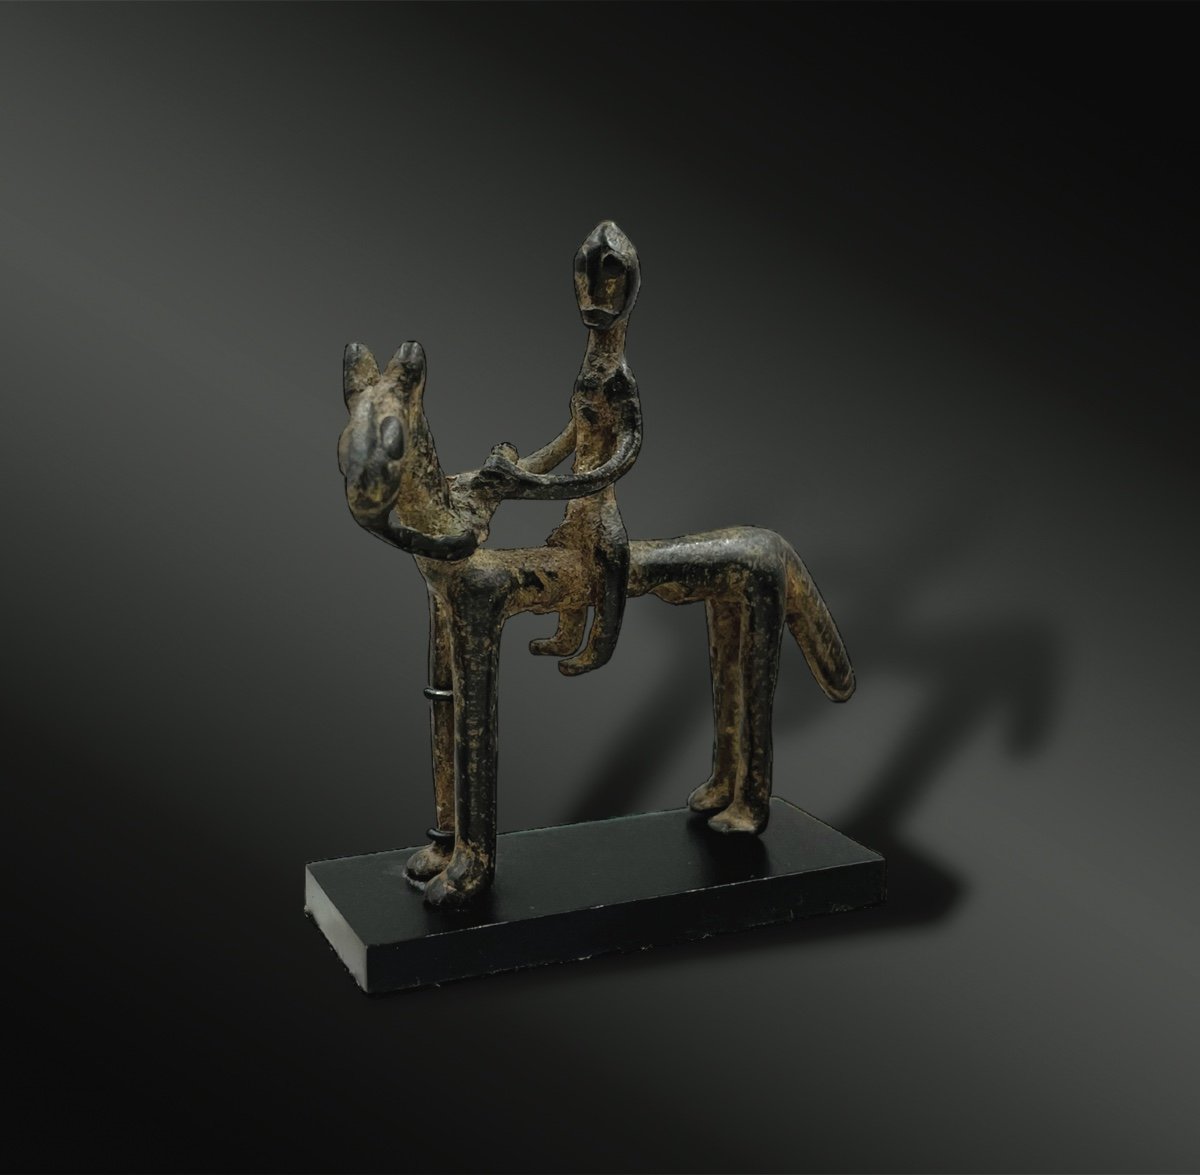 Statuette Figuring A Rider - Dogon Culture, Mali - 19th Century Or Earlier